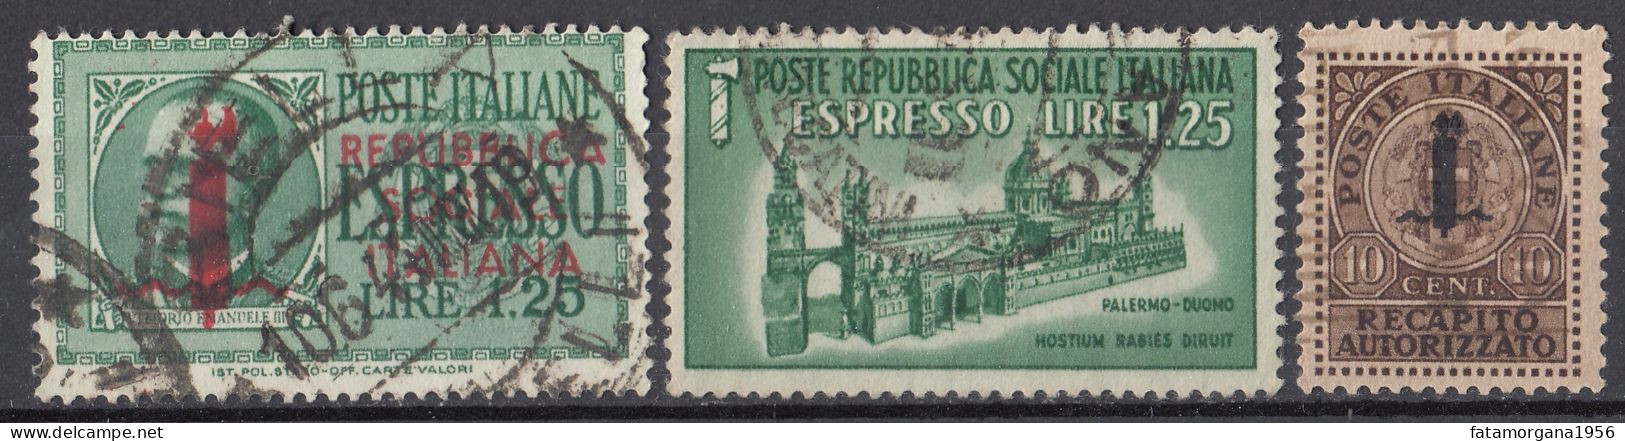 ITALIA, REPUBBLICA SOCIALE - 1944 - Lotto Di 3 Di Francobolli Per Espresso/recapito Autorizzato Usati: Yvert 3, 5 E 6. - Posta Espresso